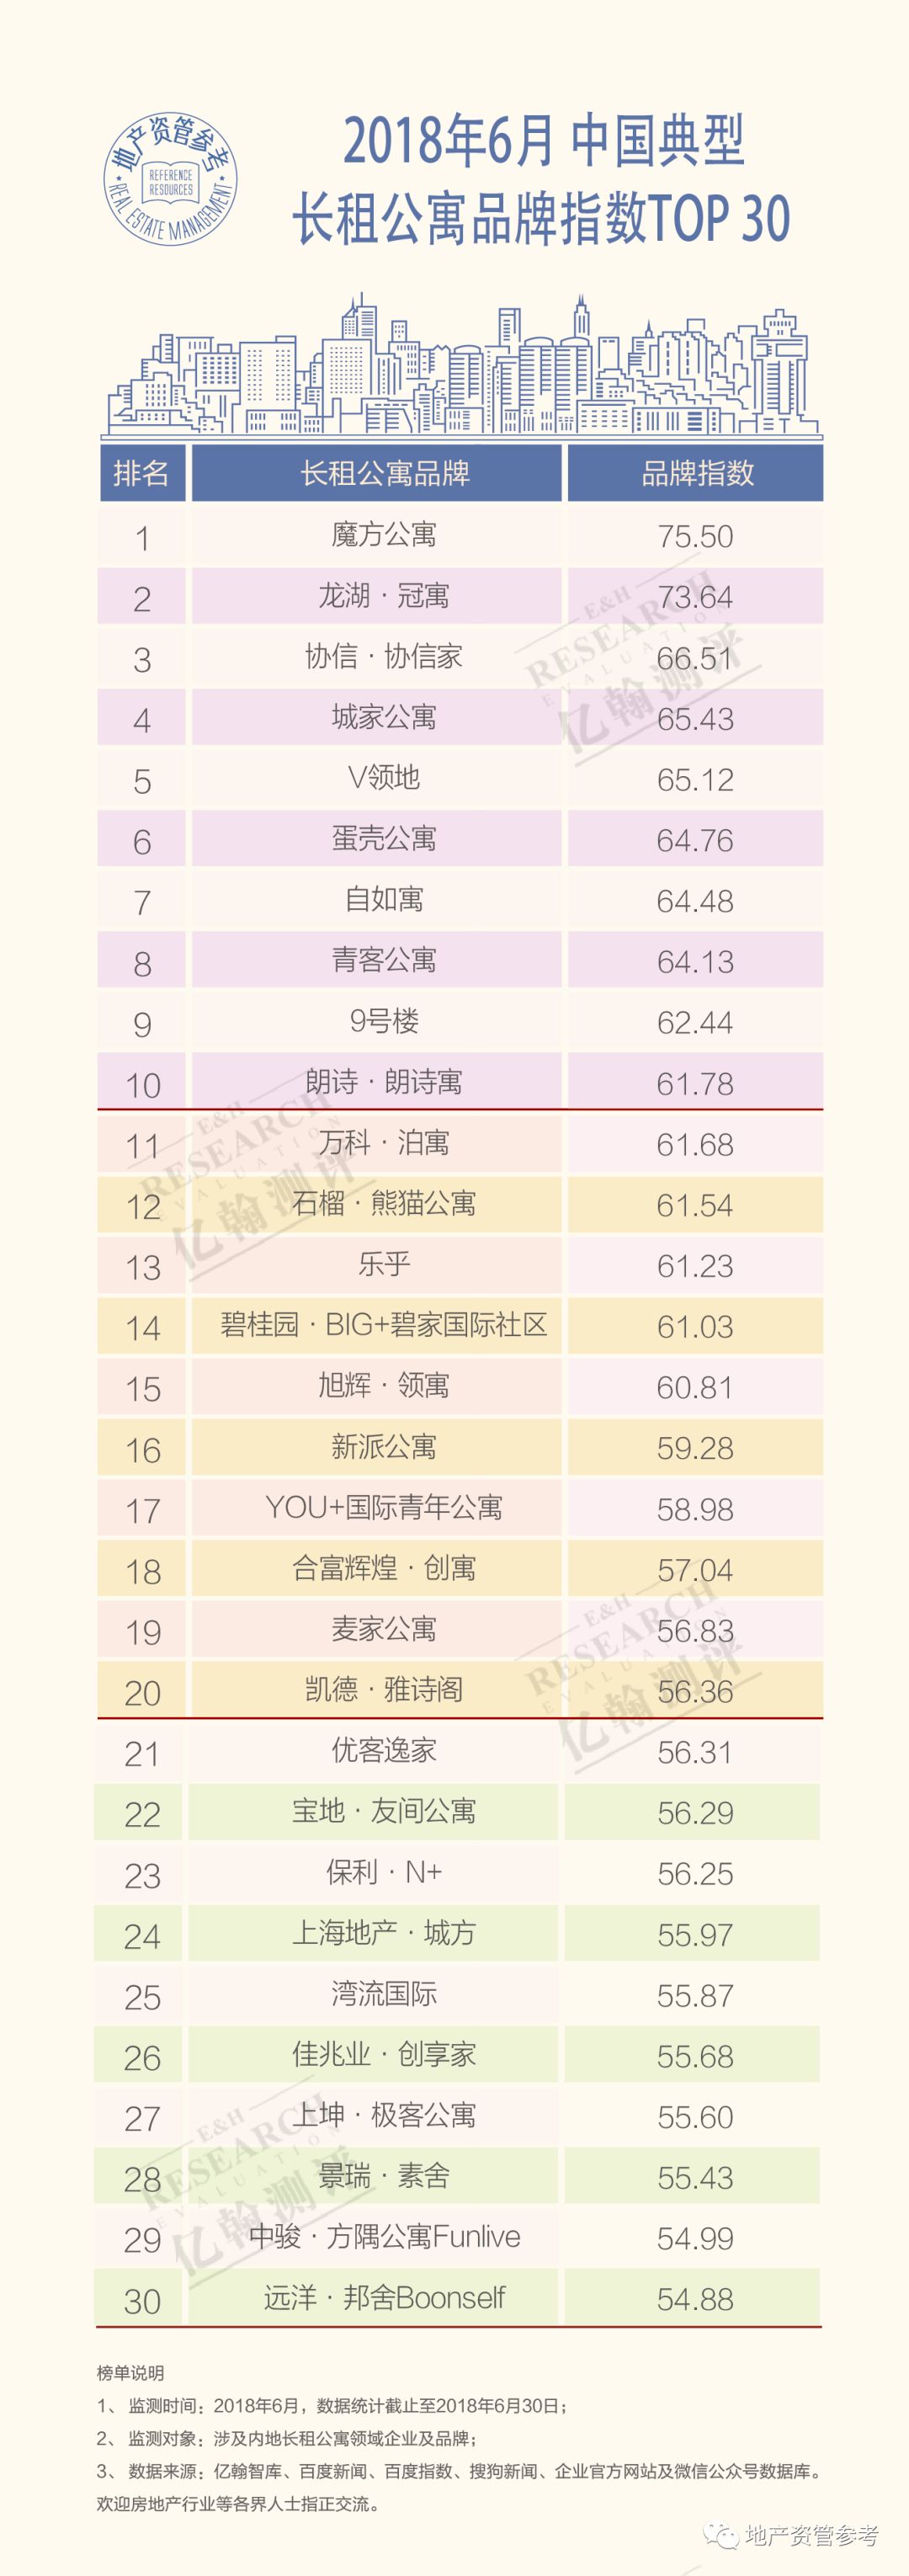 6月中國典型長租公寓品牌指數TOP30榜單發佈 公寓品牌牽手網際網路-中國網地産